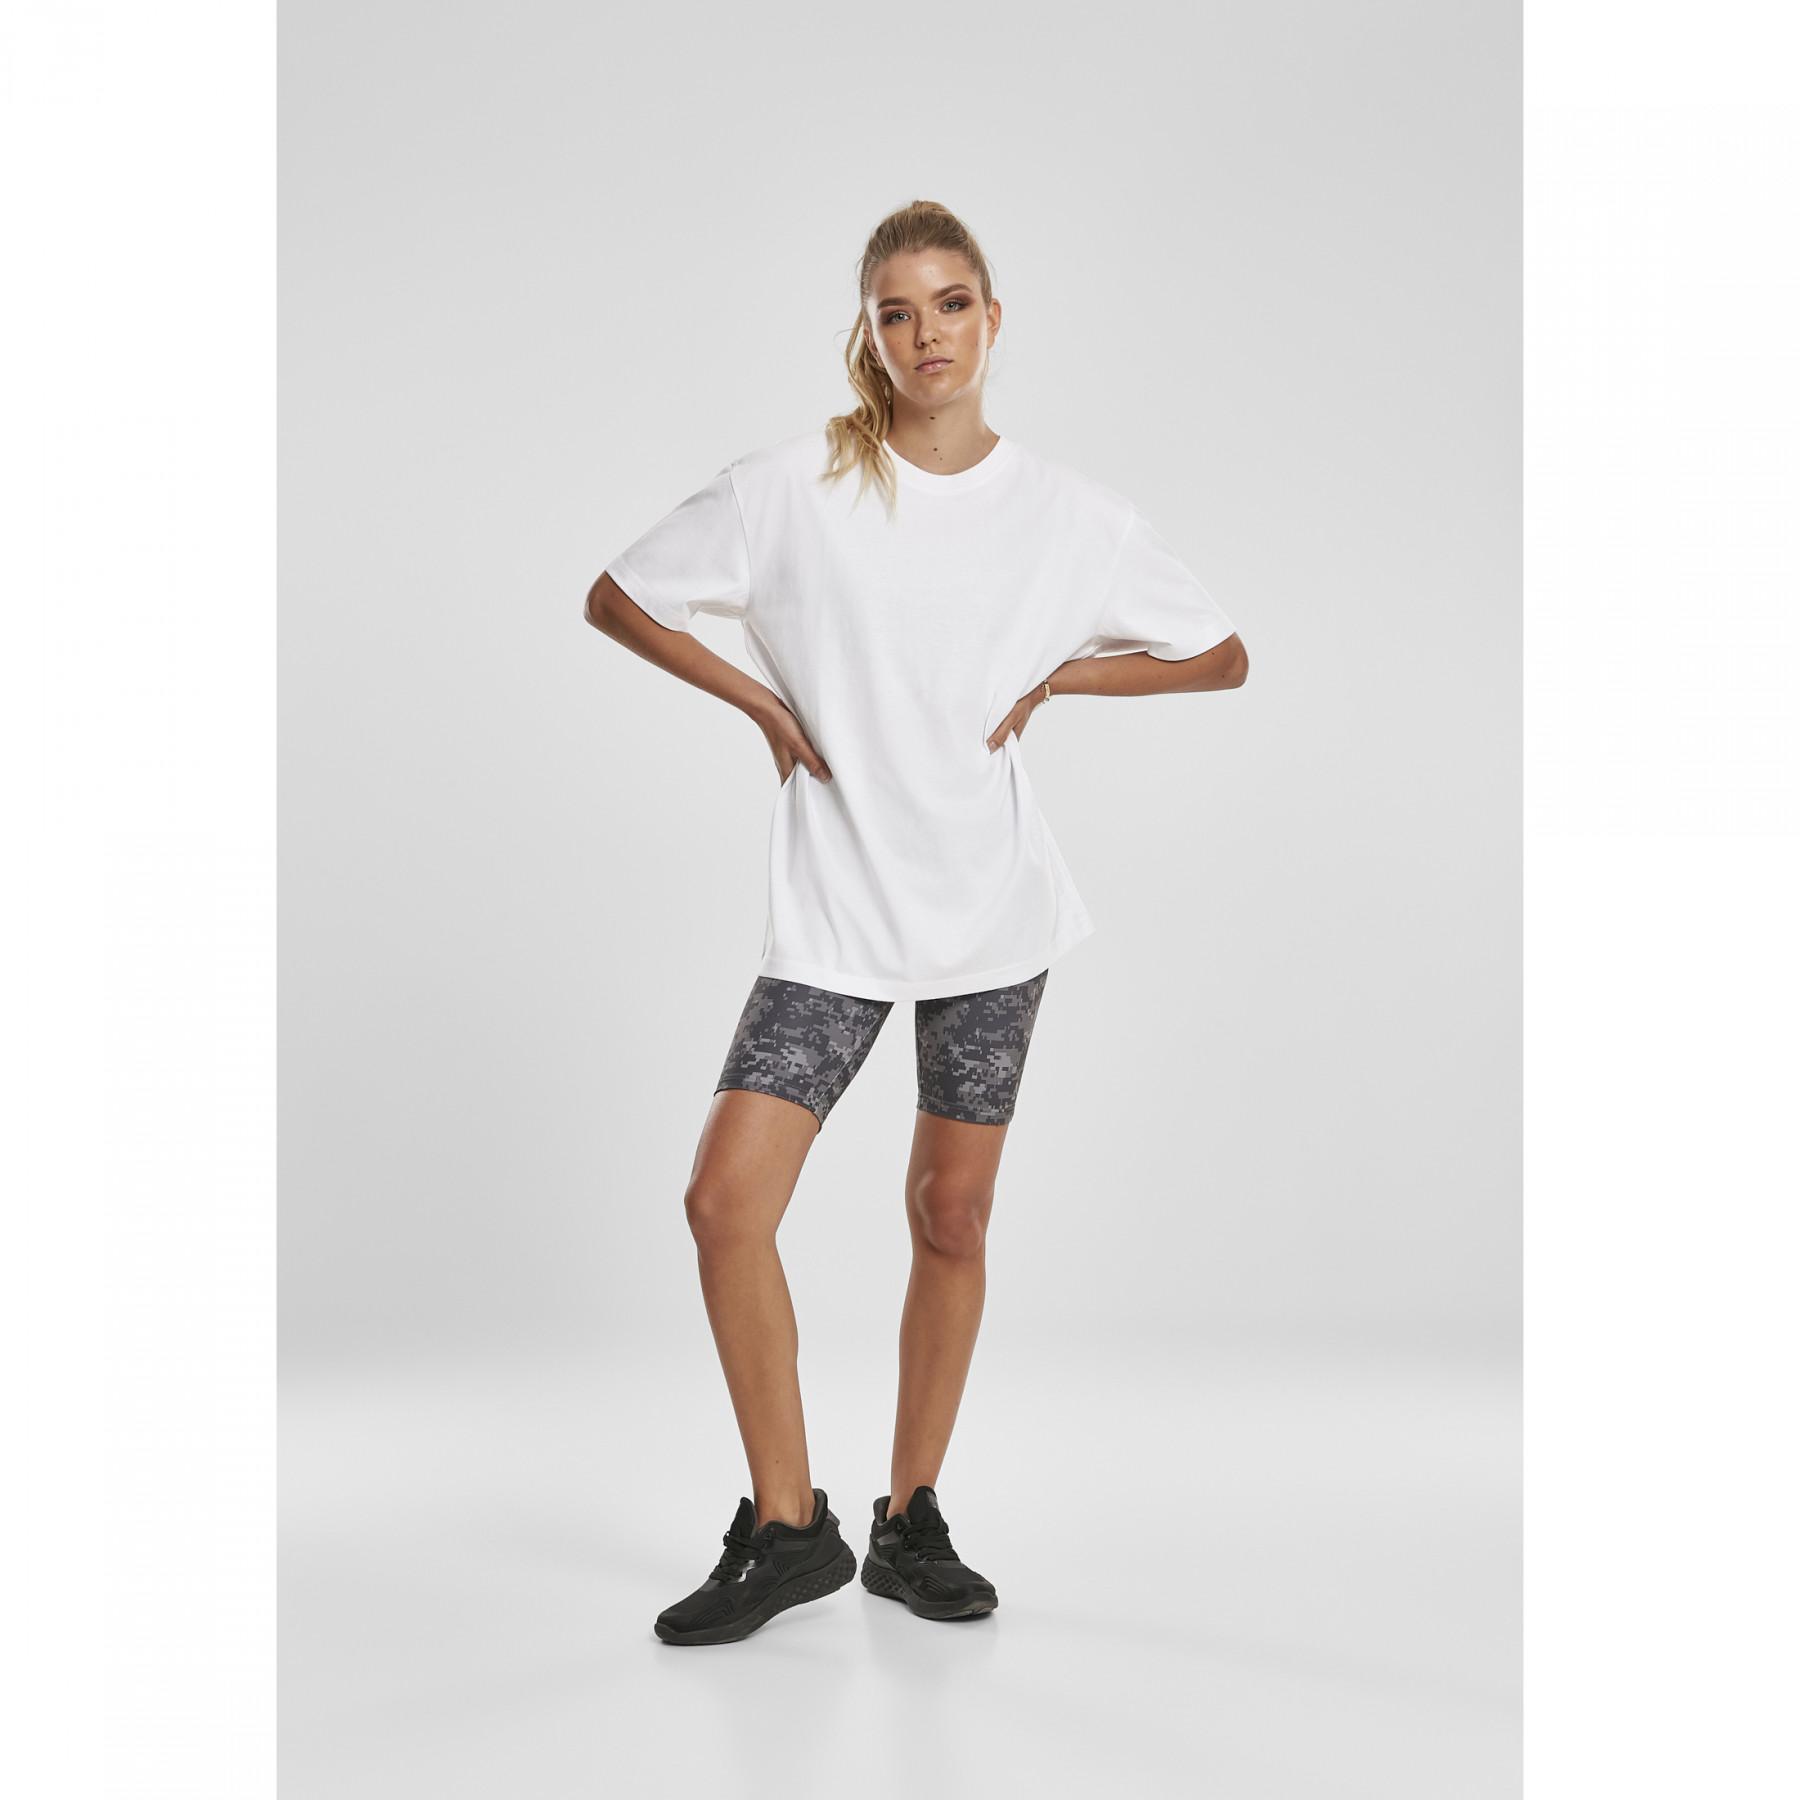 Cycling shorts for women high waist tech Shorts - Women Urban & camo - Classics Skirts - Clothing